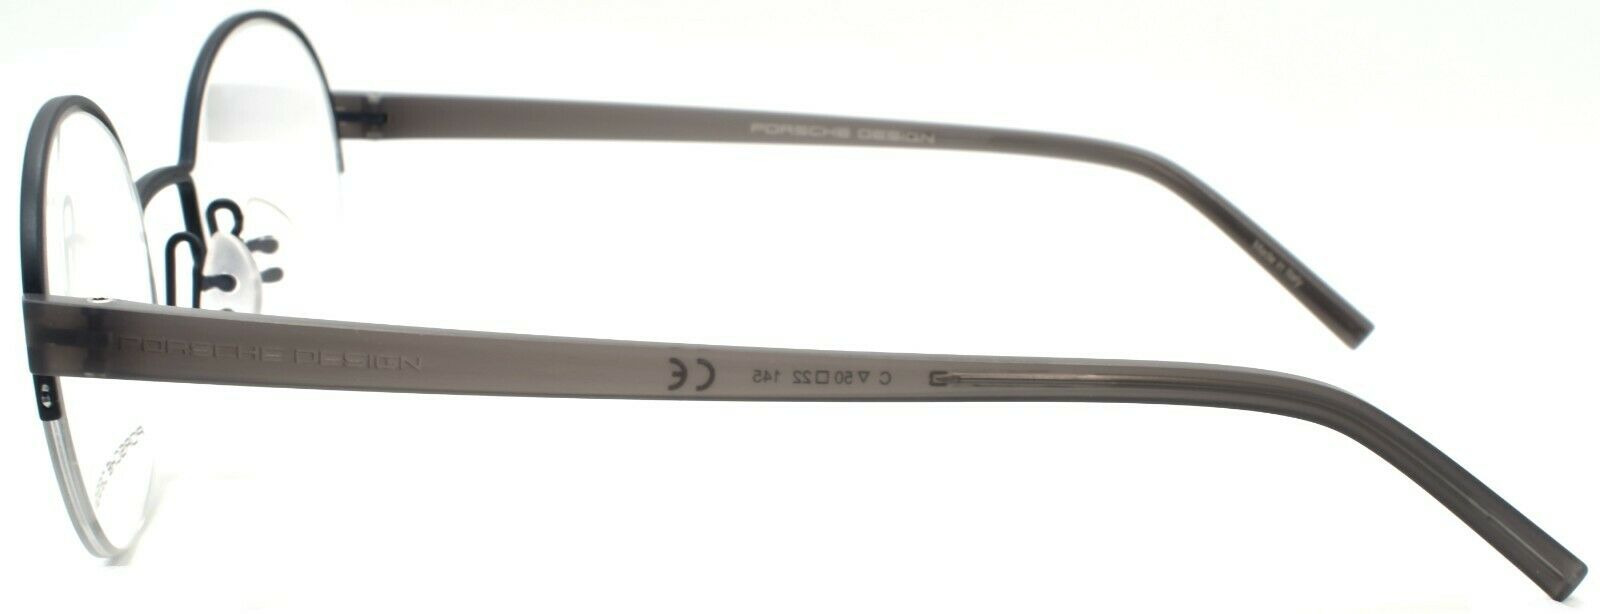 3-Porsche Design P8350 C Eyeglasses Frames Half-rim Round 50-22-145 Blue-4046901618247-IKSpecs